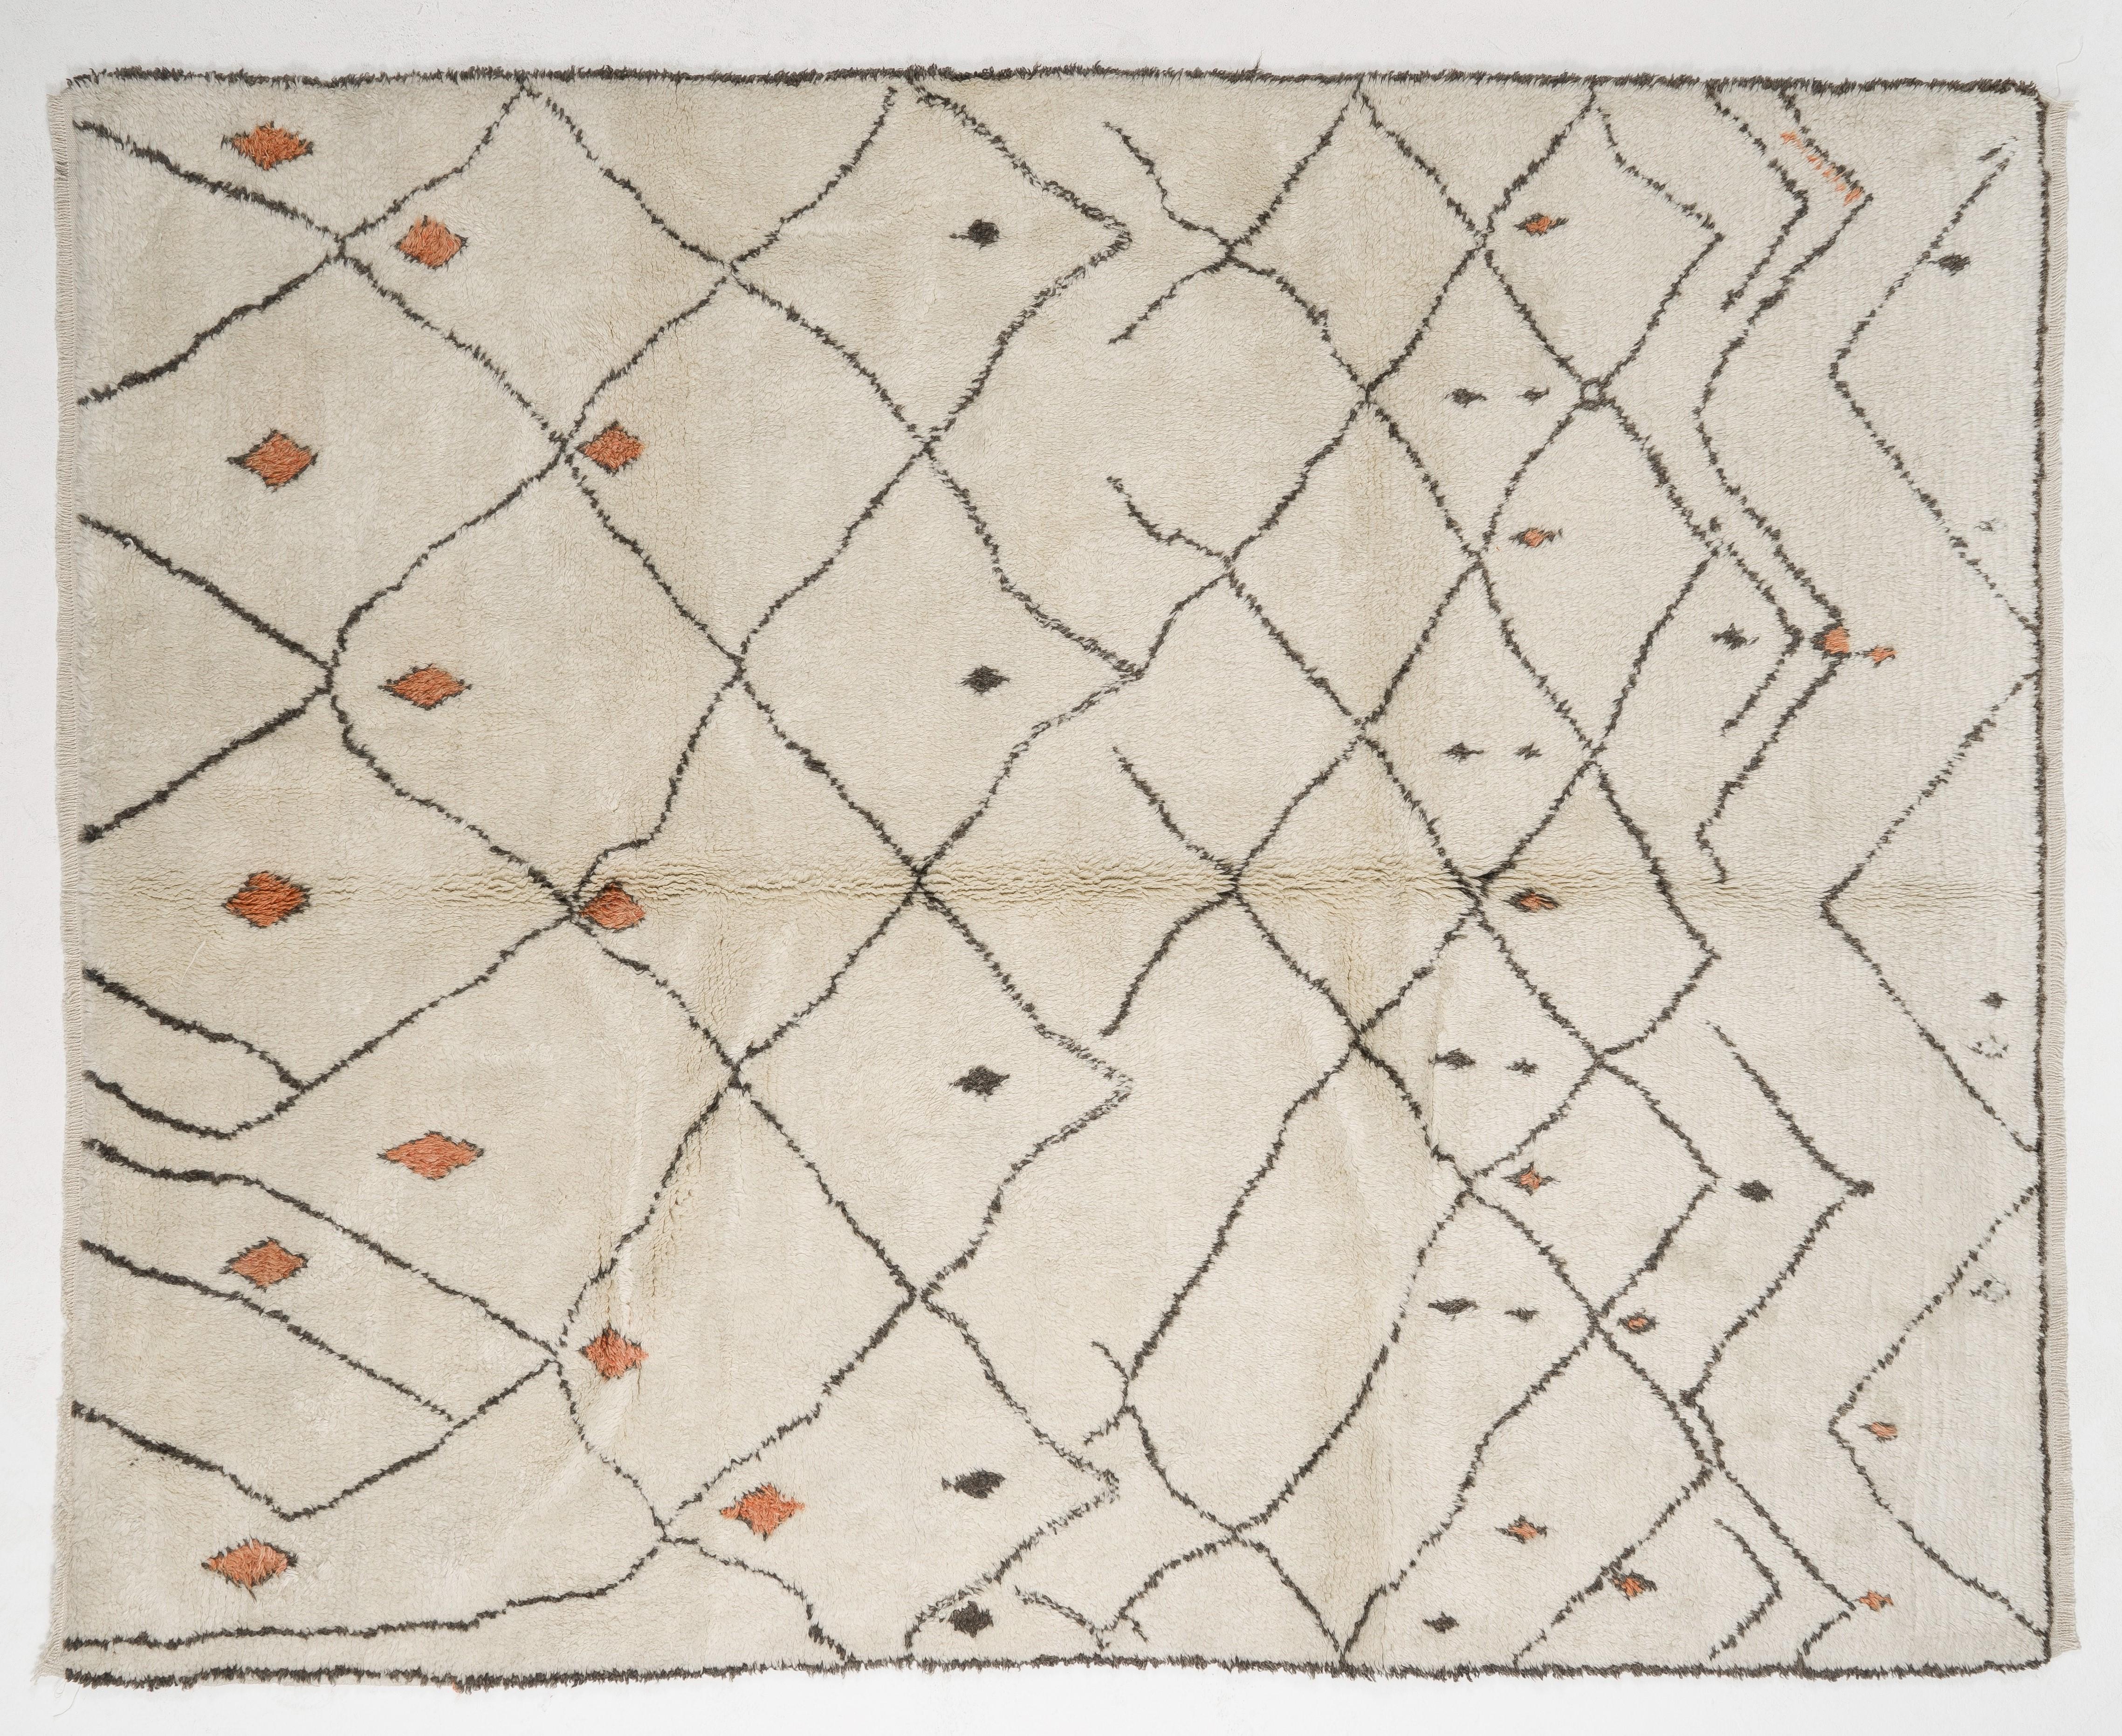 Ein moderner, handgefertigter marokkanischer Teppich mit dickem, weichem Flor aus natürlicher, ungefärbter cremefarbener und brauner Wolle. Der Teppich zeigt ein modernes, sich auflösendes Rautenmuster mit einigen spärlich eingestreuten kleineren